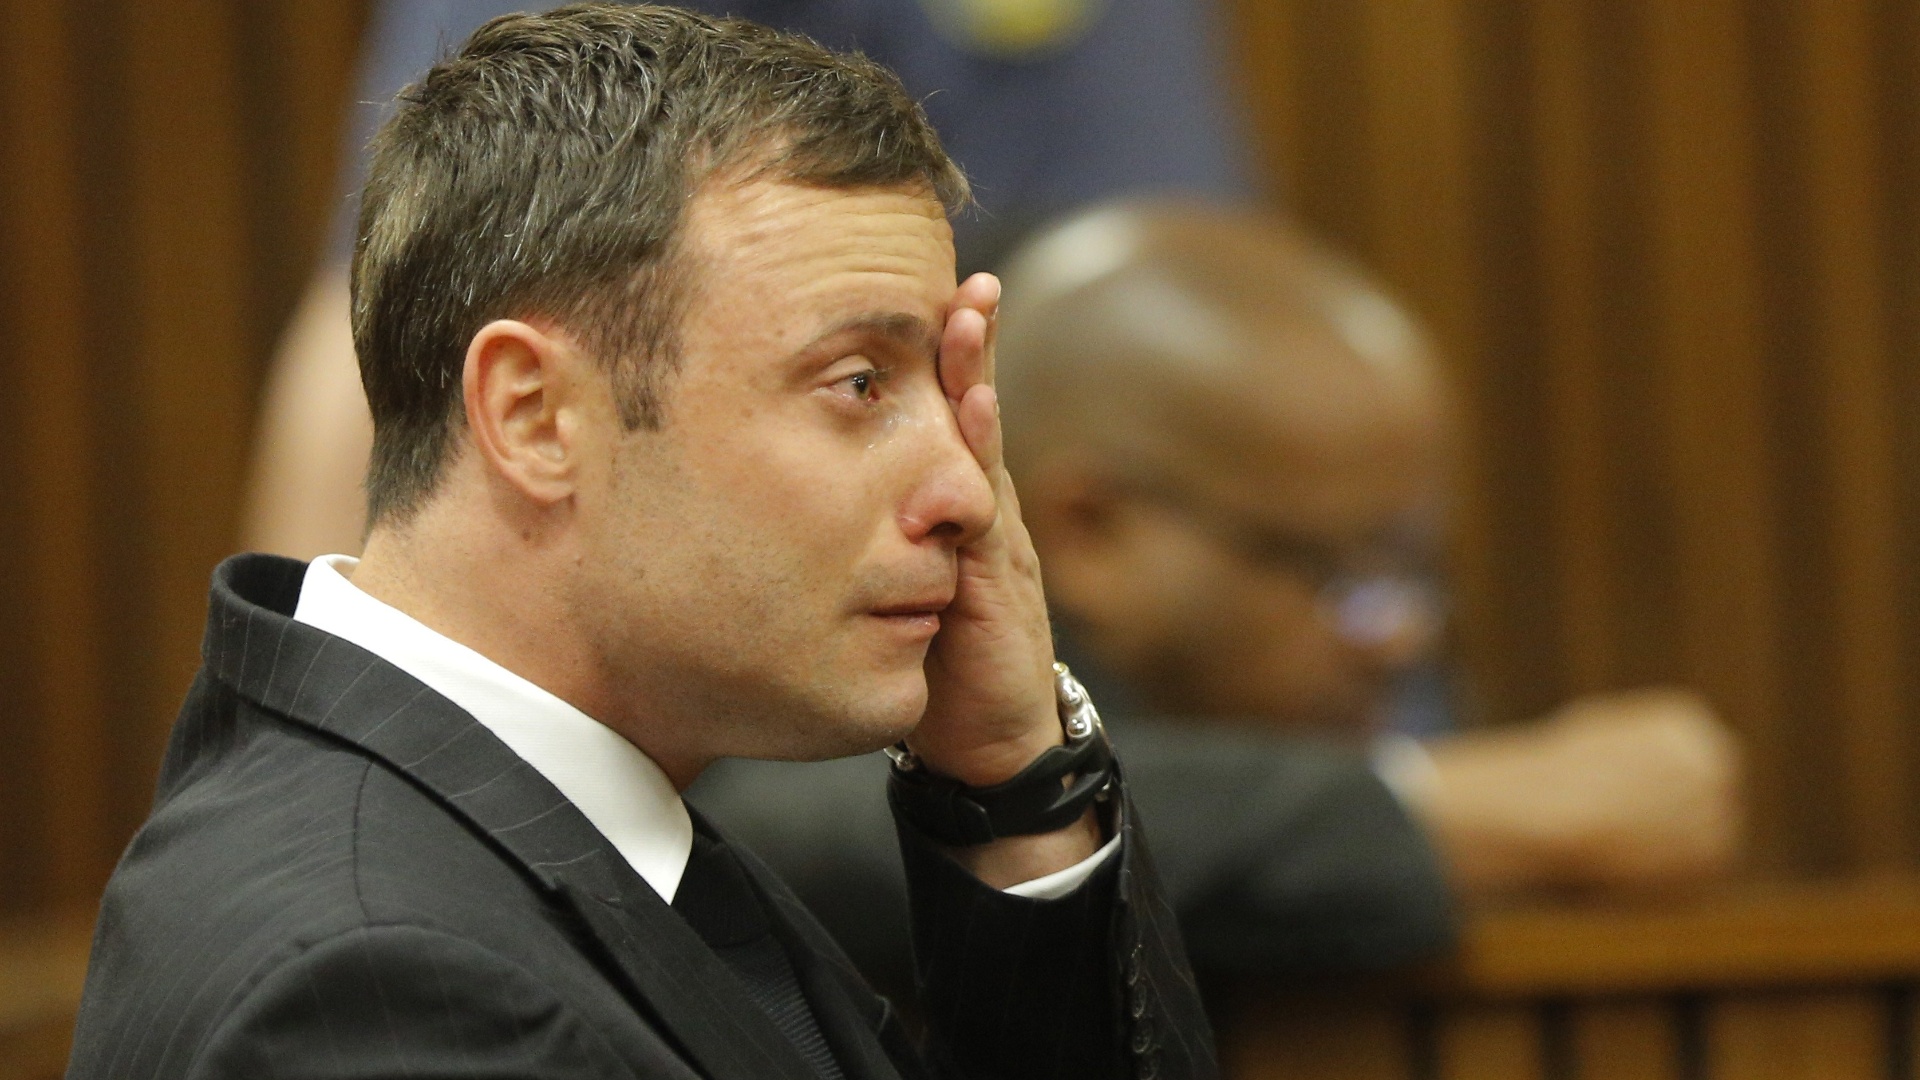 11.set.2014 - O atleta paraolímpico sul-africano Oscar Pistorius chora no banco dos réus enquanto é julgado em Pretória por suspeita de assassinar sua namorada, Reeva Steenkamp